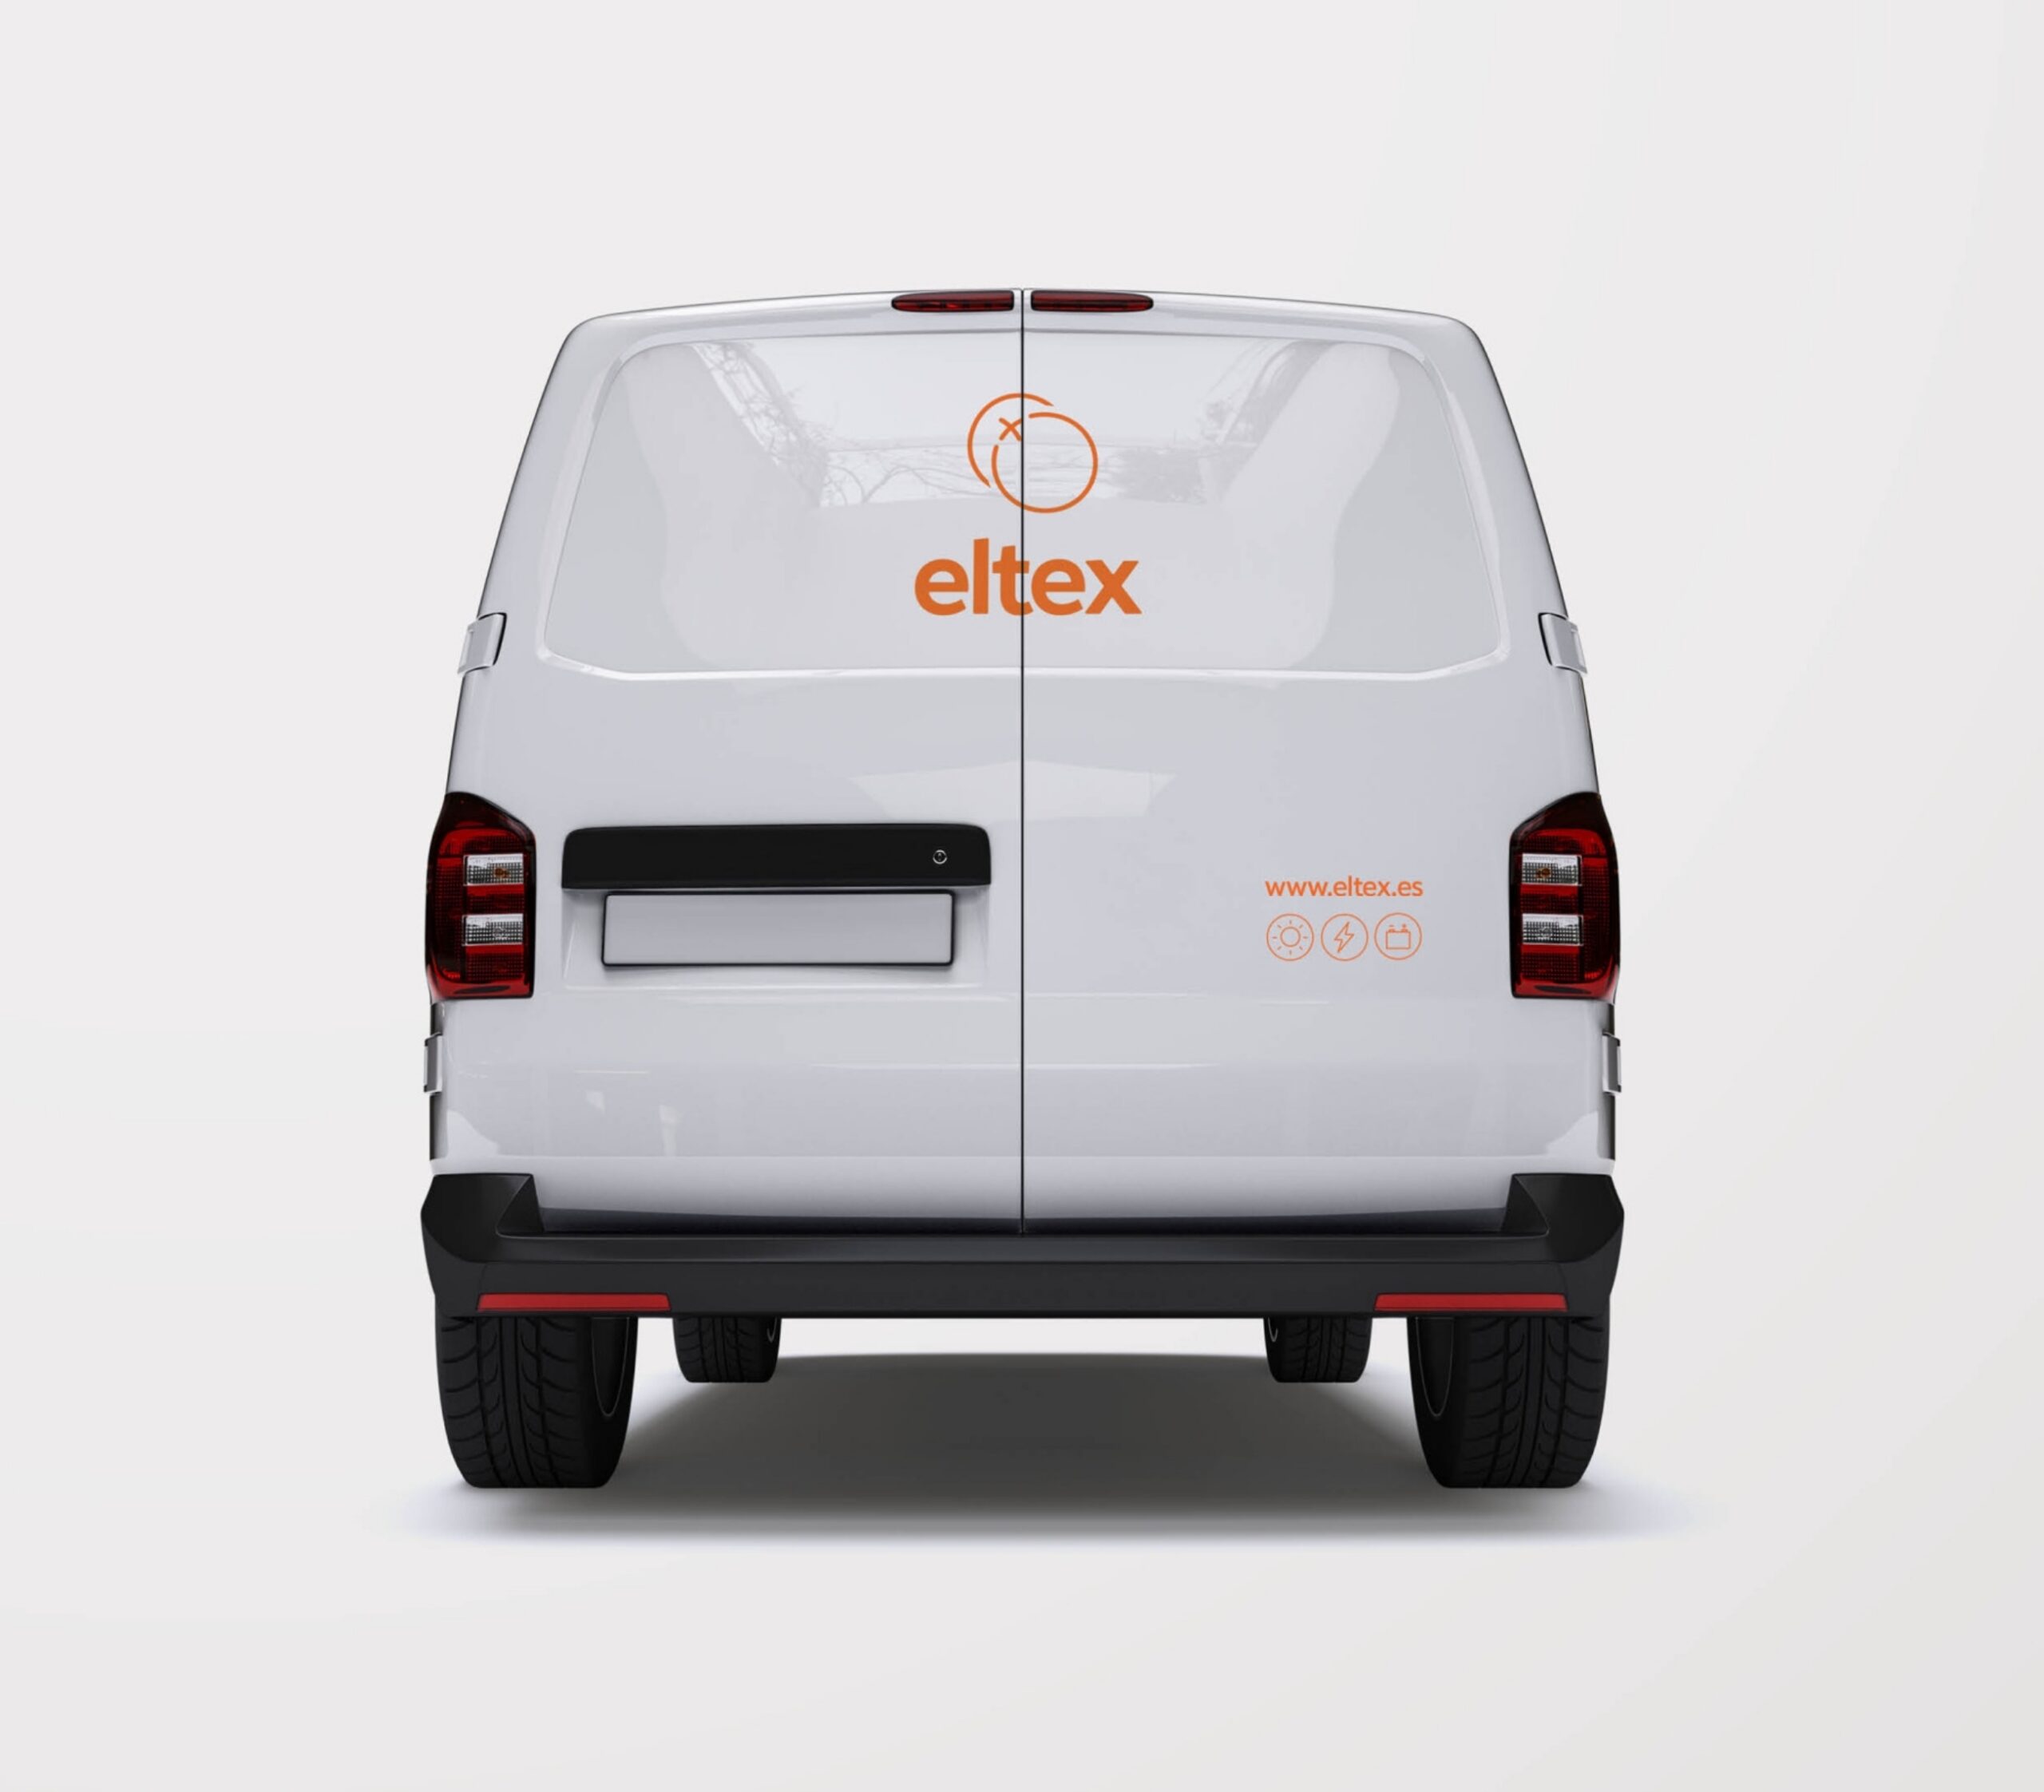 ELTEX Concept WEB 01 021 1804x0